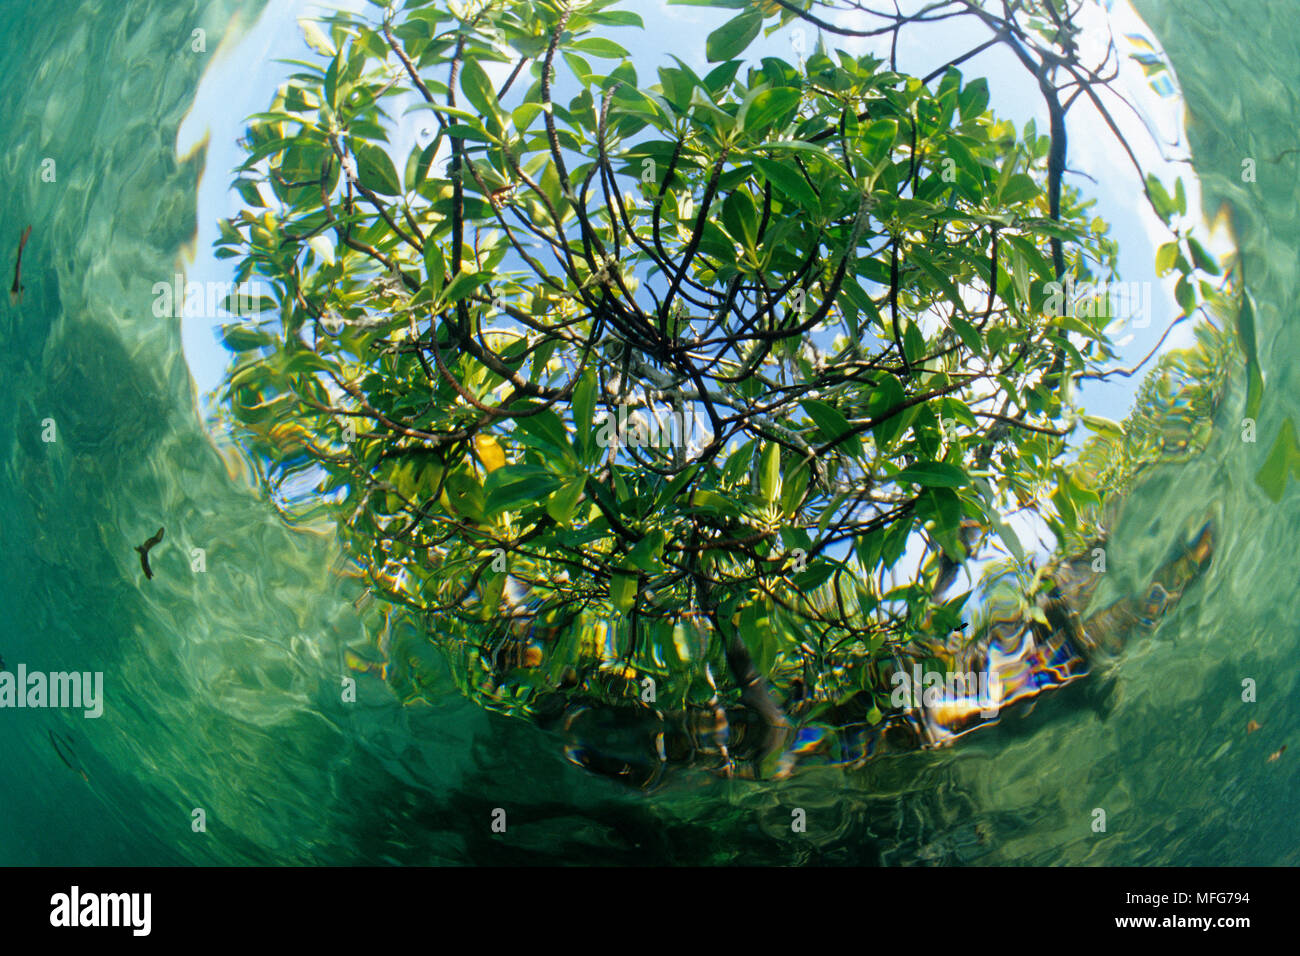 Alberi di mangrovia visto da sott'acqua all'interno della laguna, Aldabra Atoll, patrimonio mondiale naturale, Seychelles, Oceano Indiano Data: 24.06.08 RIF: ZB77 Foto Stock